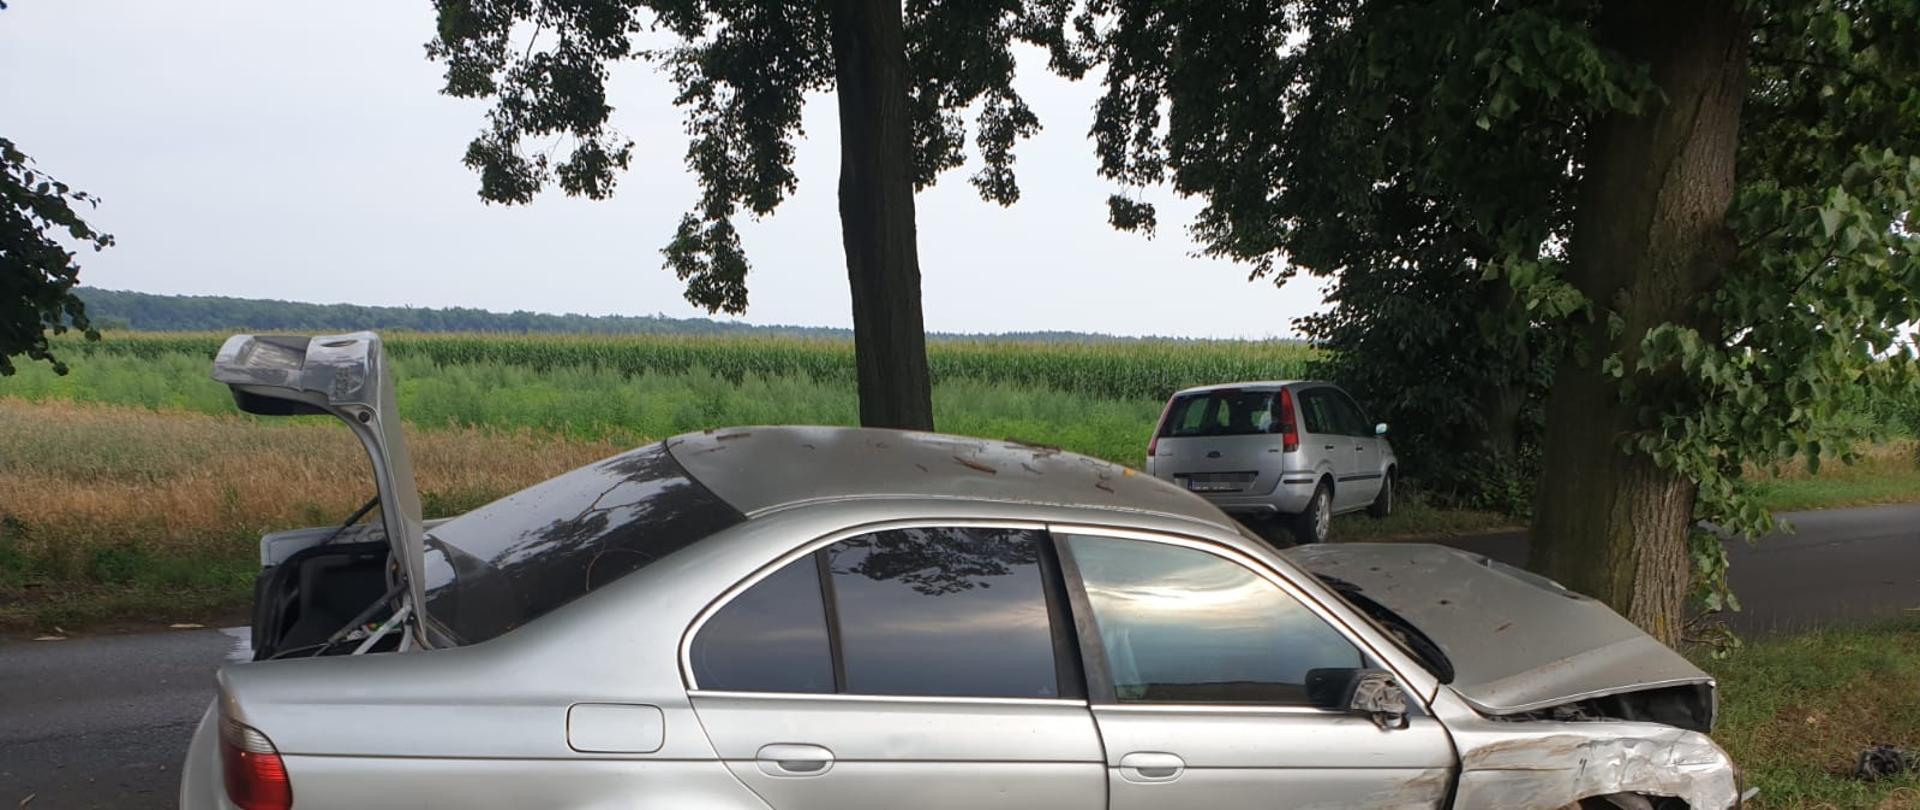 Samochód osobowy BMW uderzył w drzewo, ma rozbity przód, 